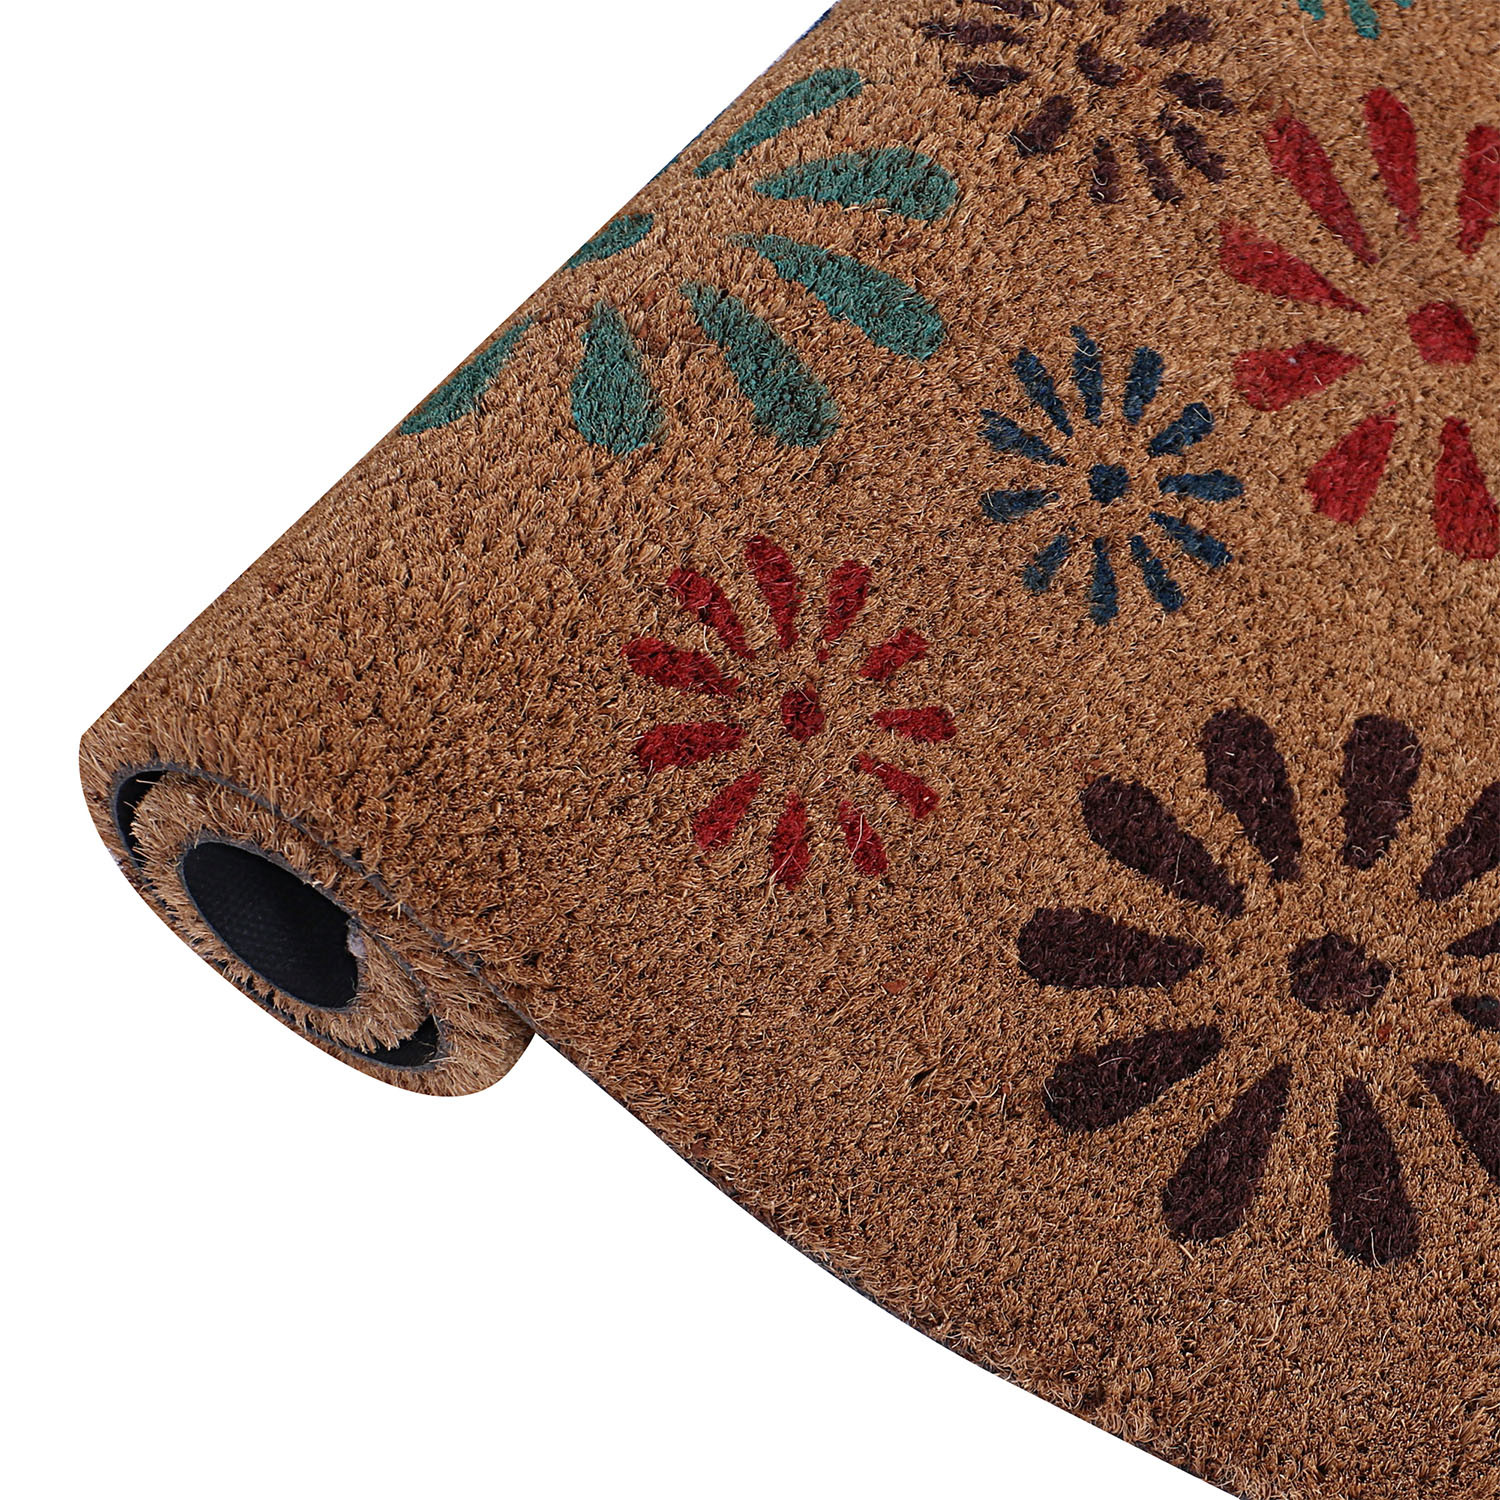 Kuber Industries Door Mat|Polyethylene Durable & Anti-Slip Natural Sunshine Print Floor Mat|Rug For Indoor or Outdoor, 30x20 Inch (Brown)